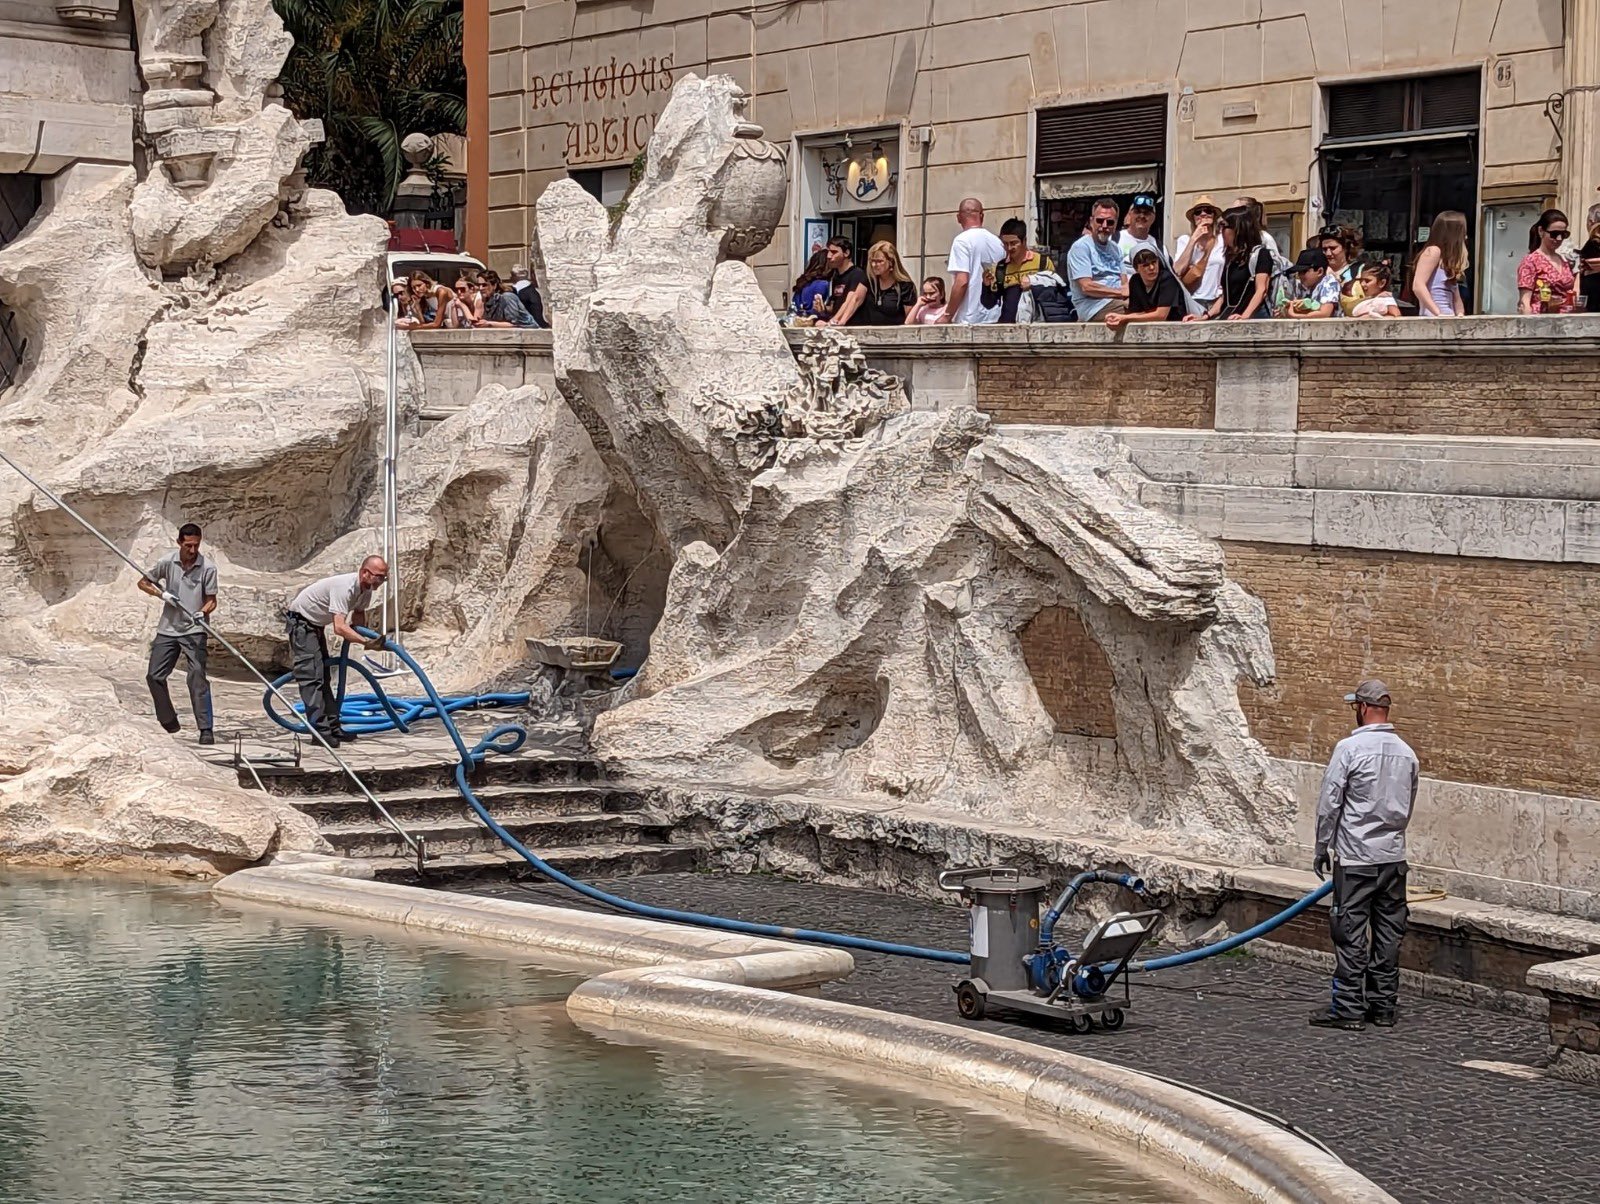 Klimatski aktivisti obojili u crno vodu u čuvenoj fontani u Rimu, posmatrači ogorčeni